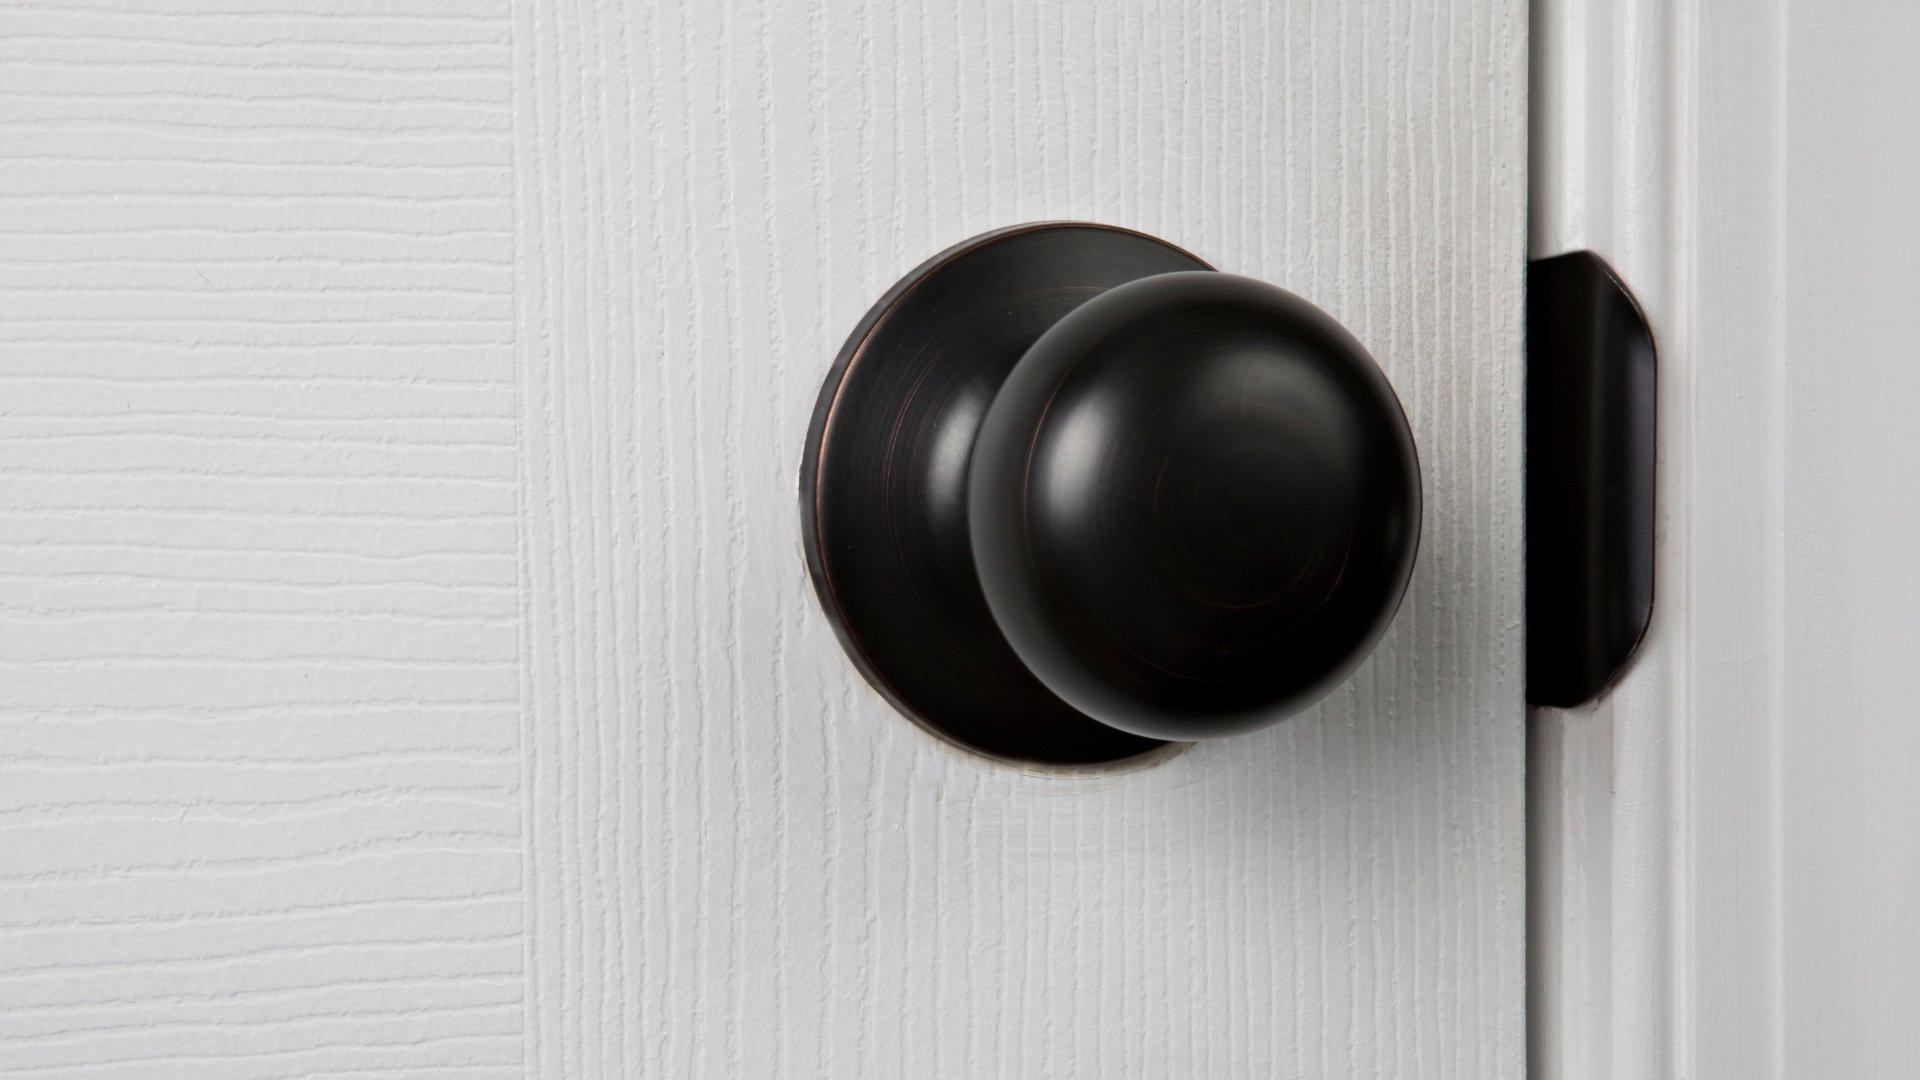 A passage door knob